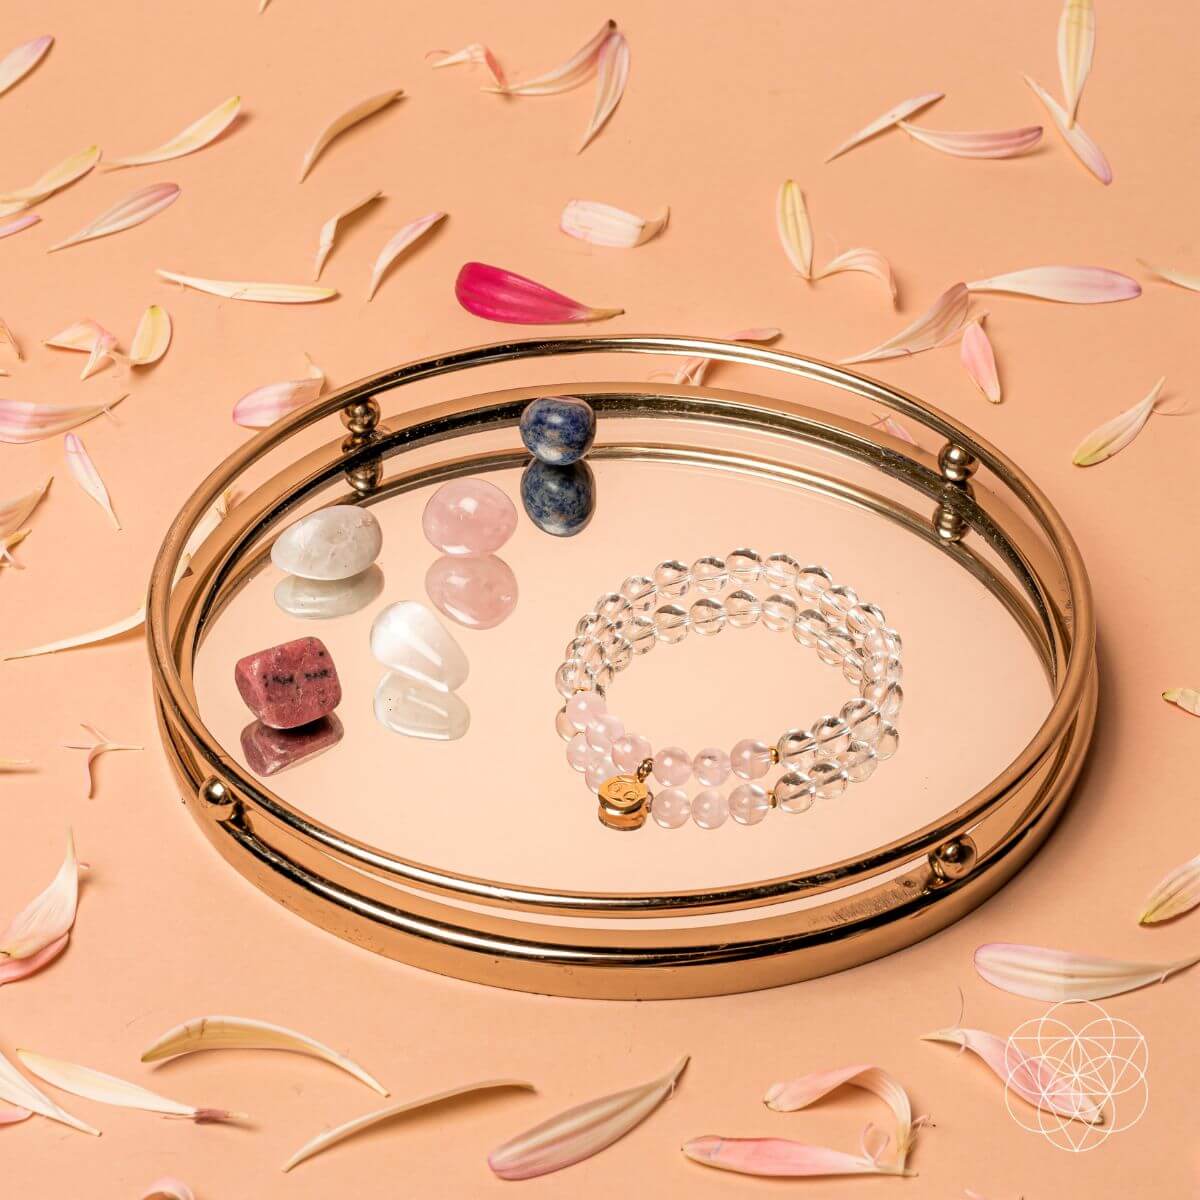 Cancer Bracelet and Crystals Set